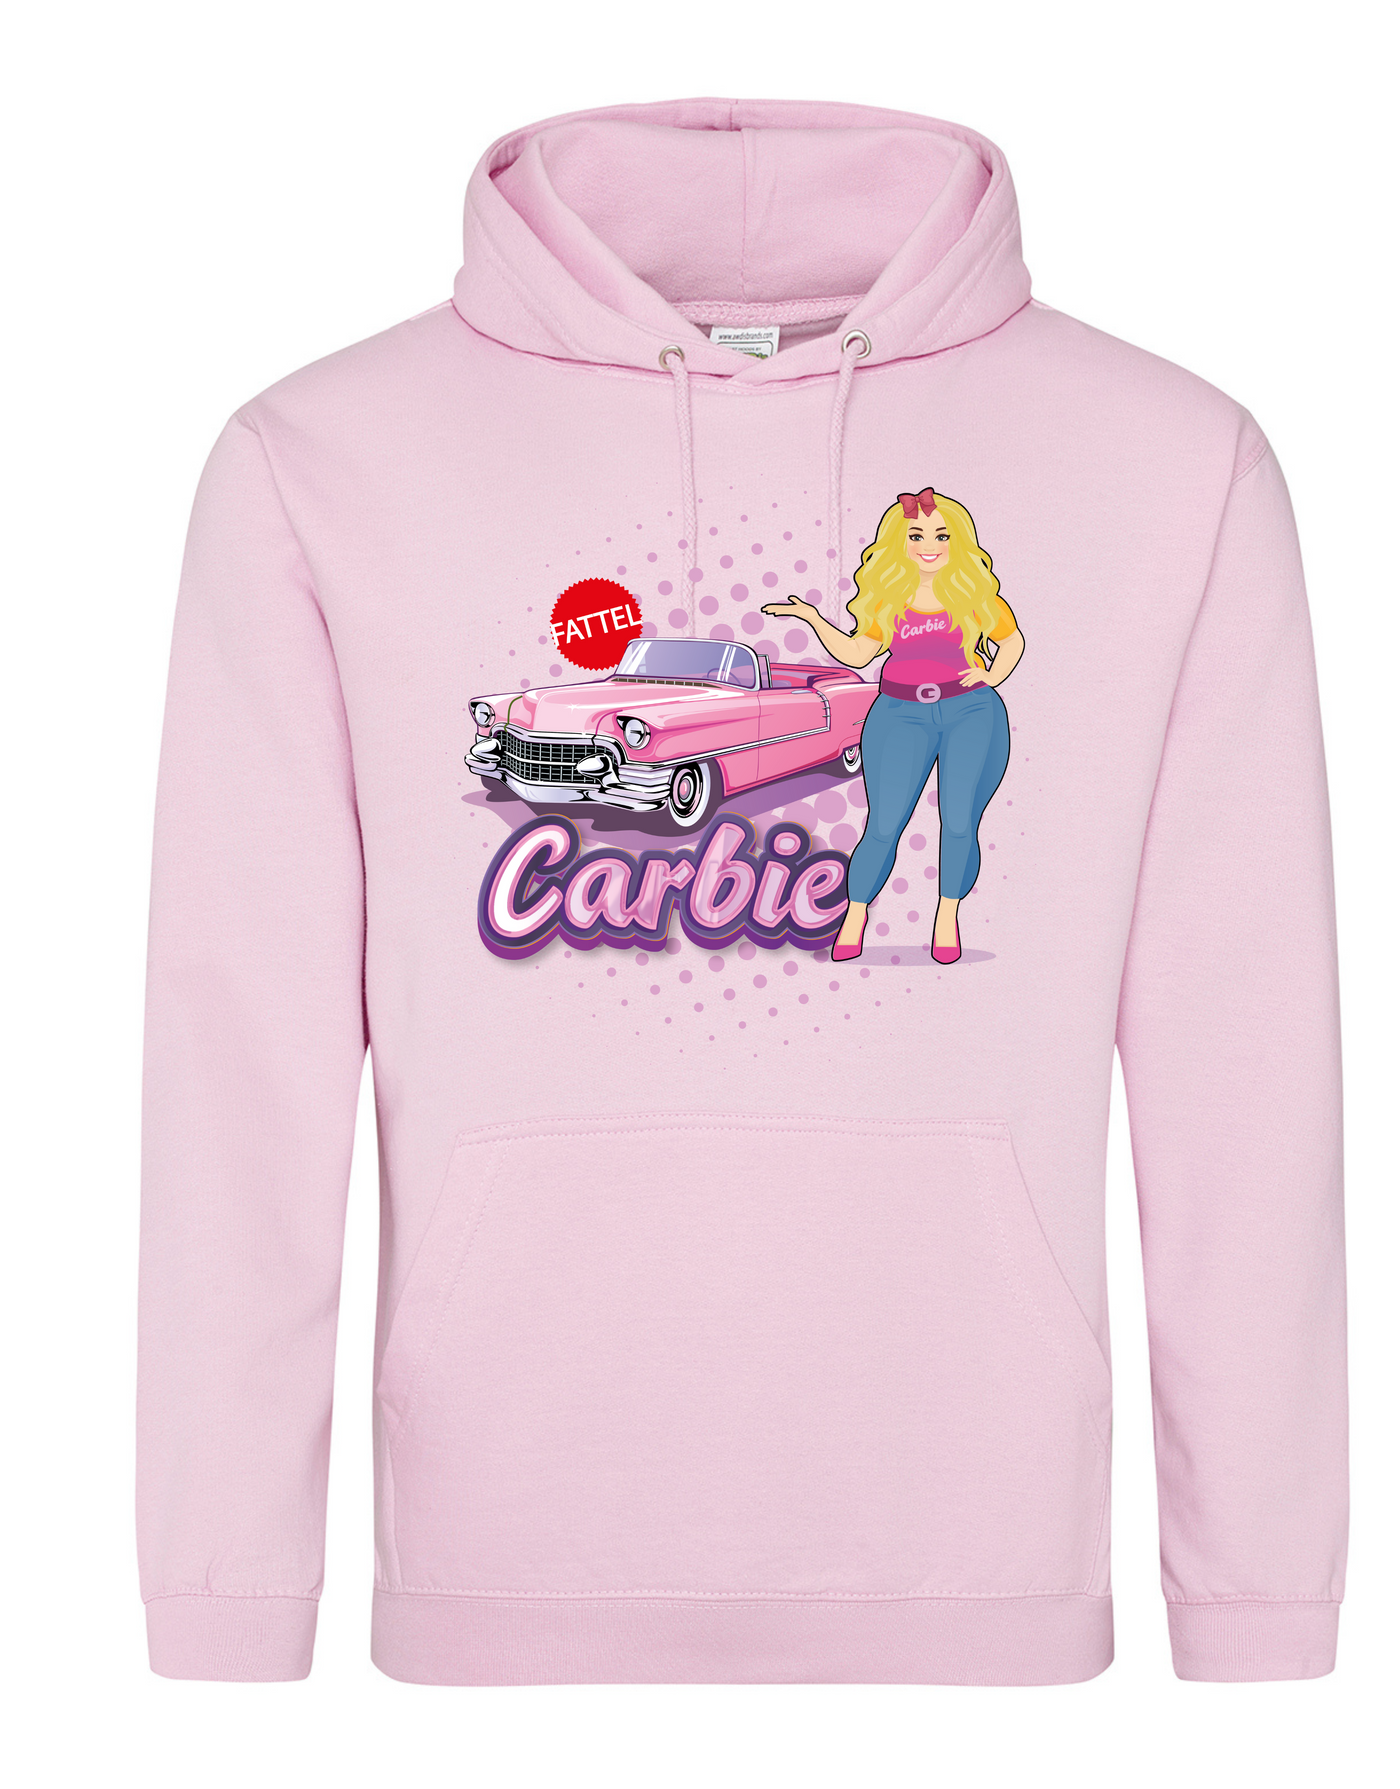 Light Pink "Carbie" Car Standard Hoodie